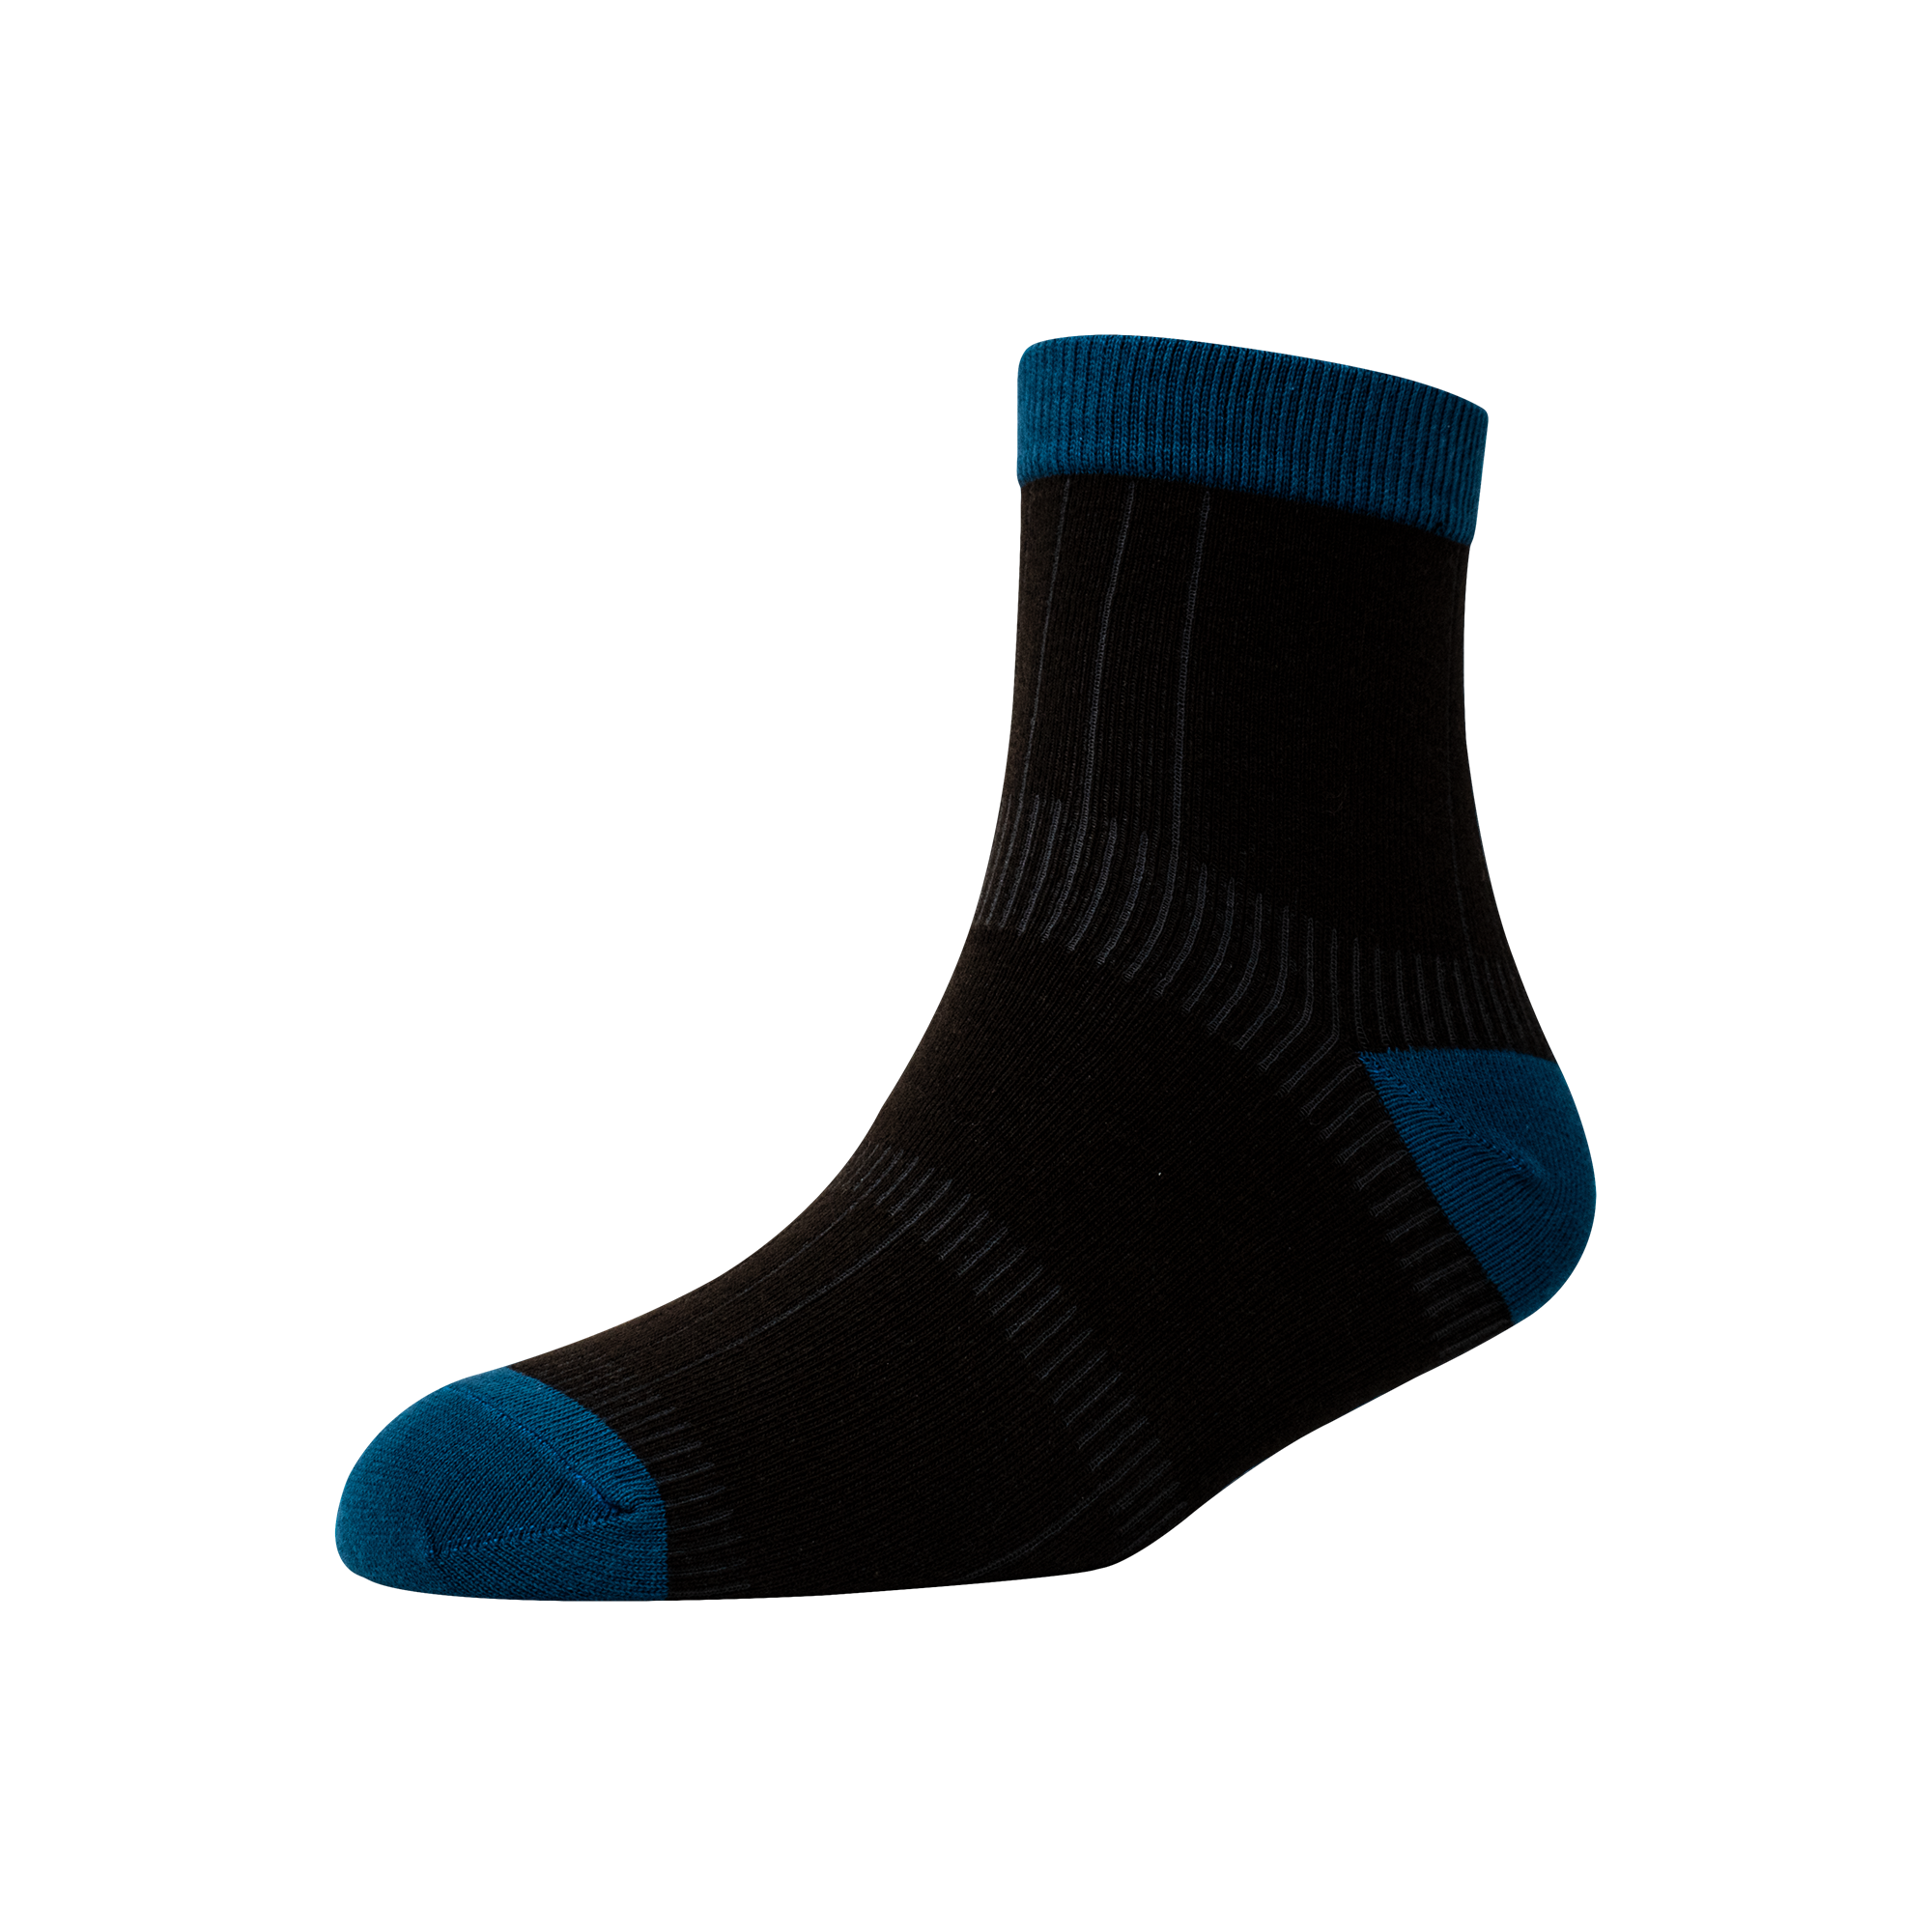 Men's AL014 Pack of 3 Ankle Socks